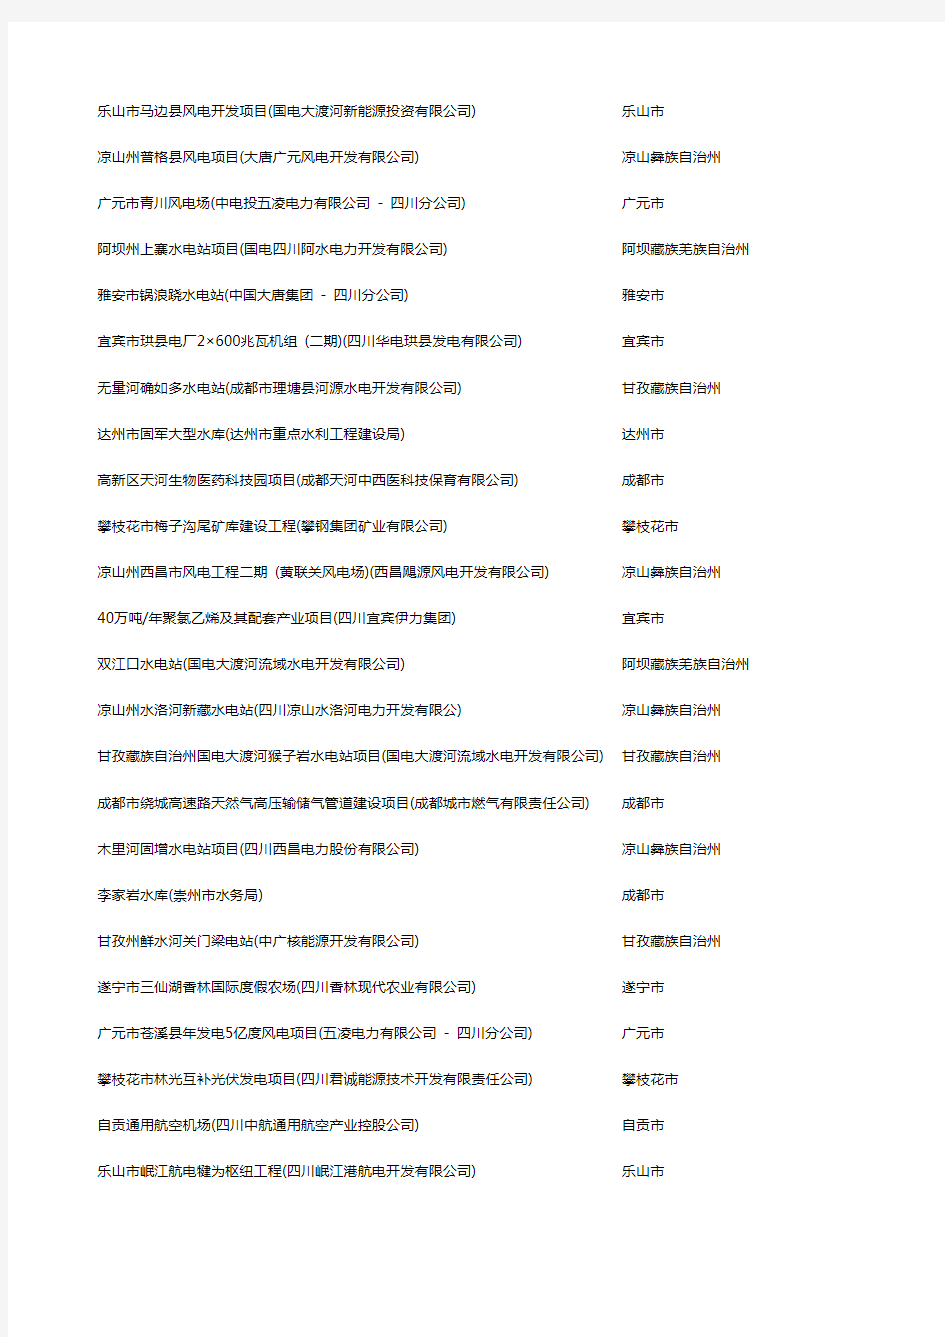 四川省 重大项目名单